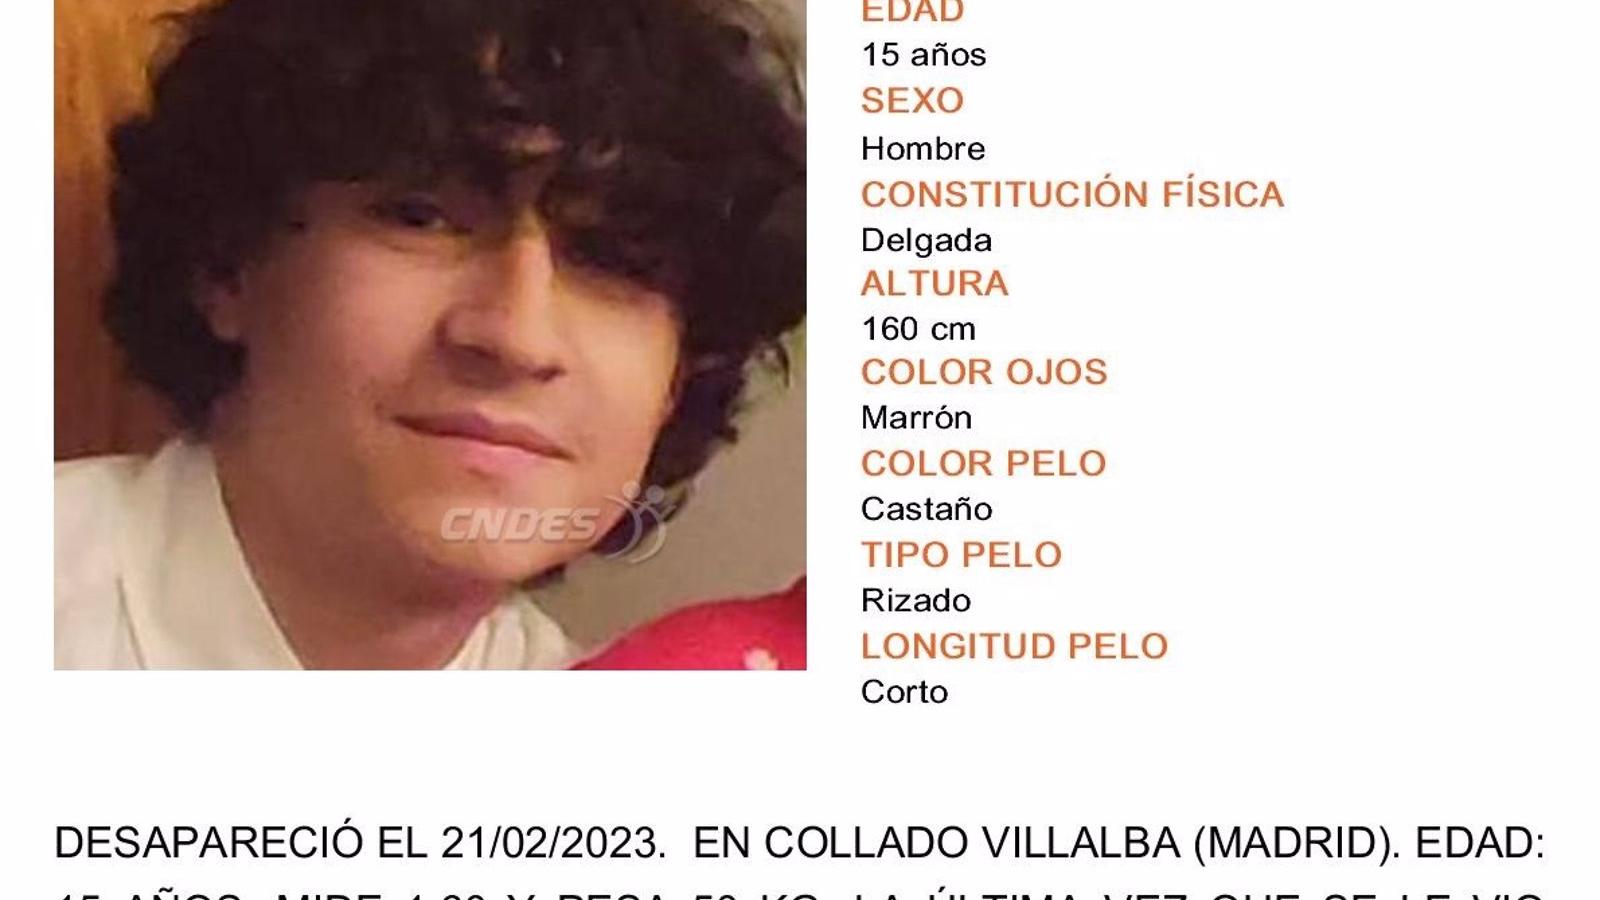  Buscan a un joven de 15 años desaparecido en Collado Villalba desde el martes